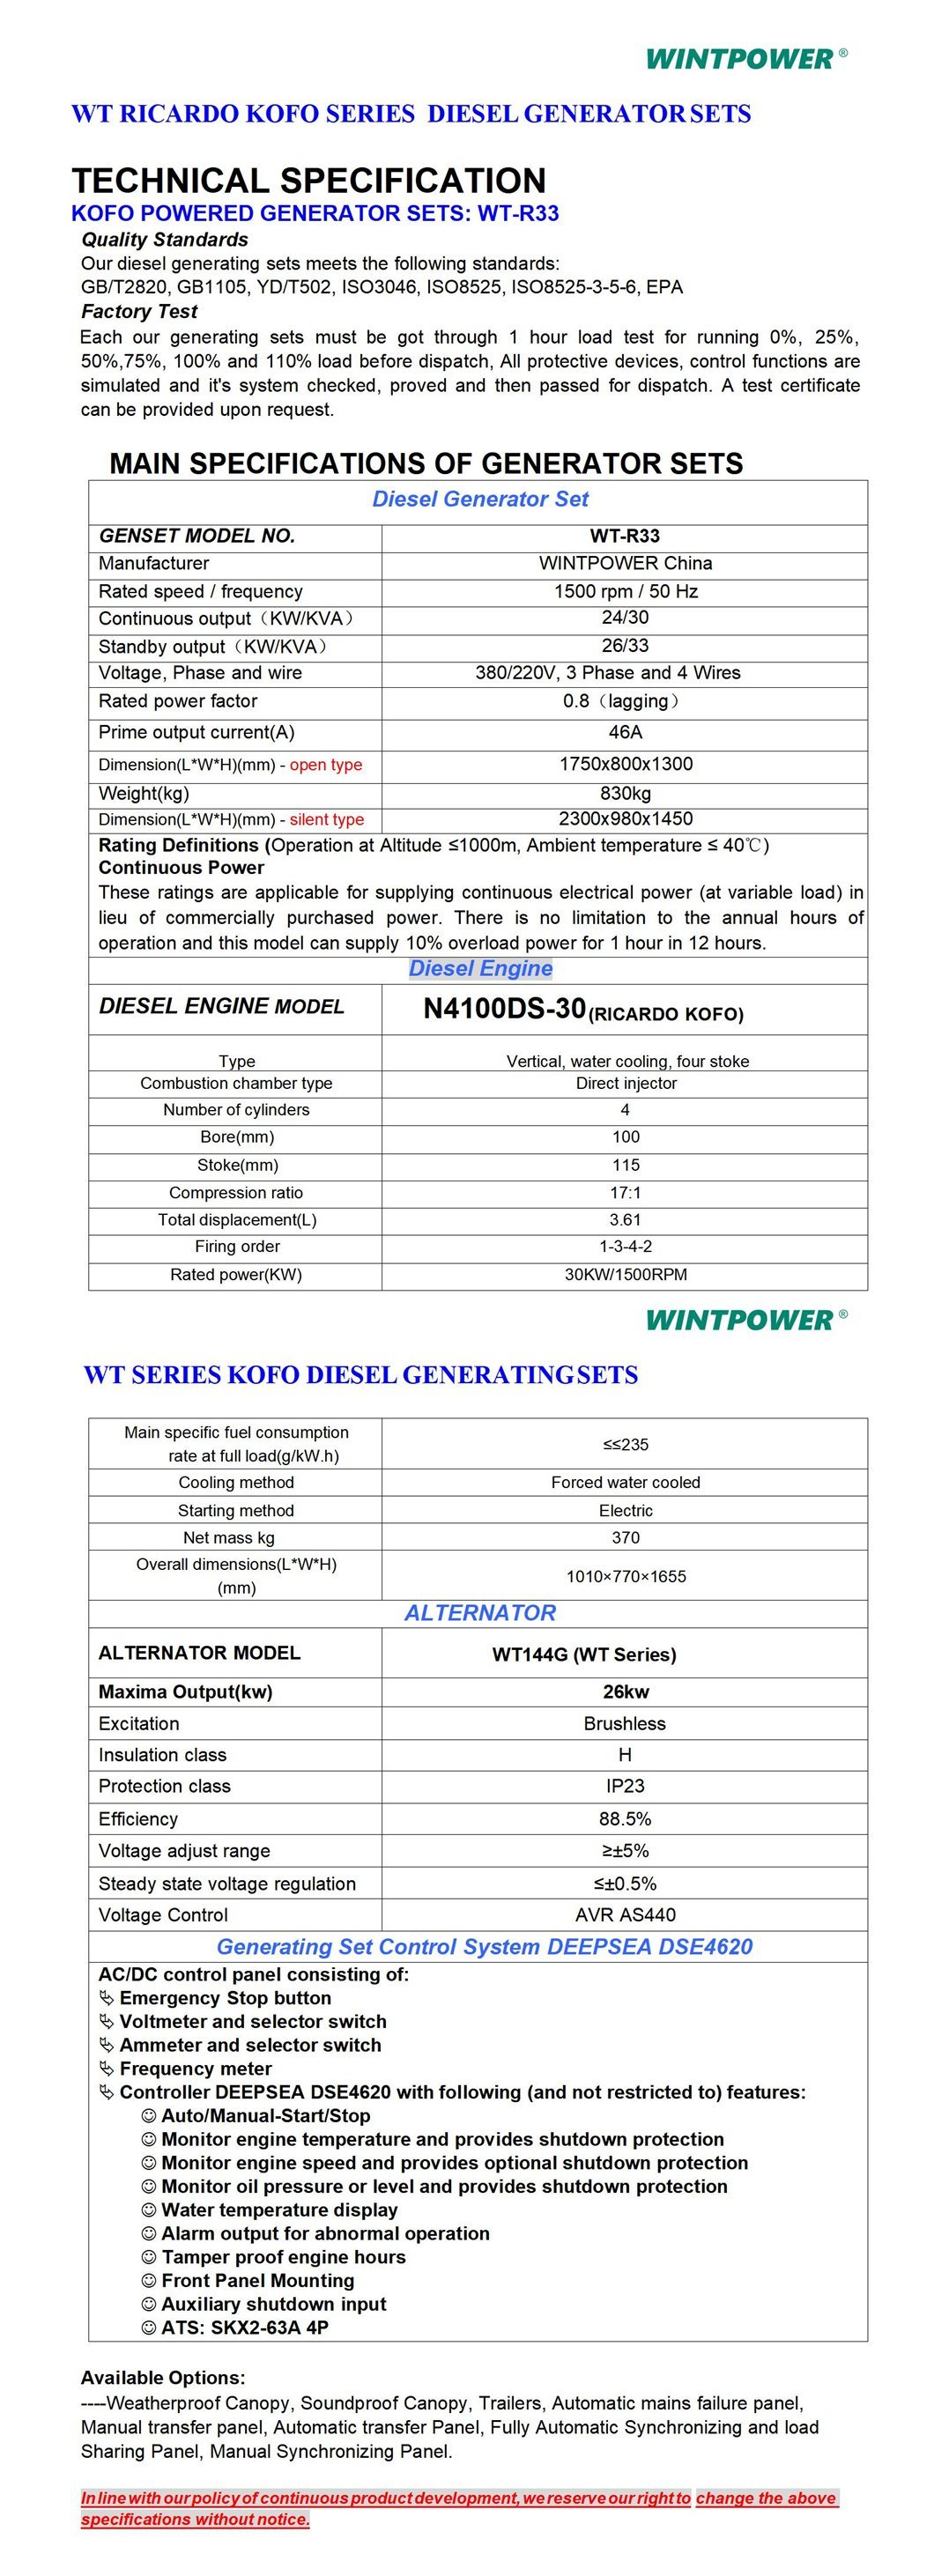 Weichai Kofo Ricardo Diesel Cav Fais Fab Generator Teeb Dg Genset 500kVA Wt13A-390de Soundproof Silent Type 400/230V 380/220V 208/110V 440V 480V 600V 50Hz 60Hz